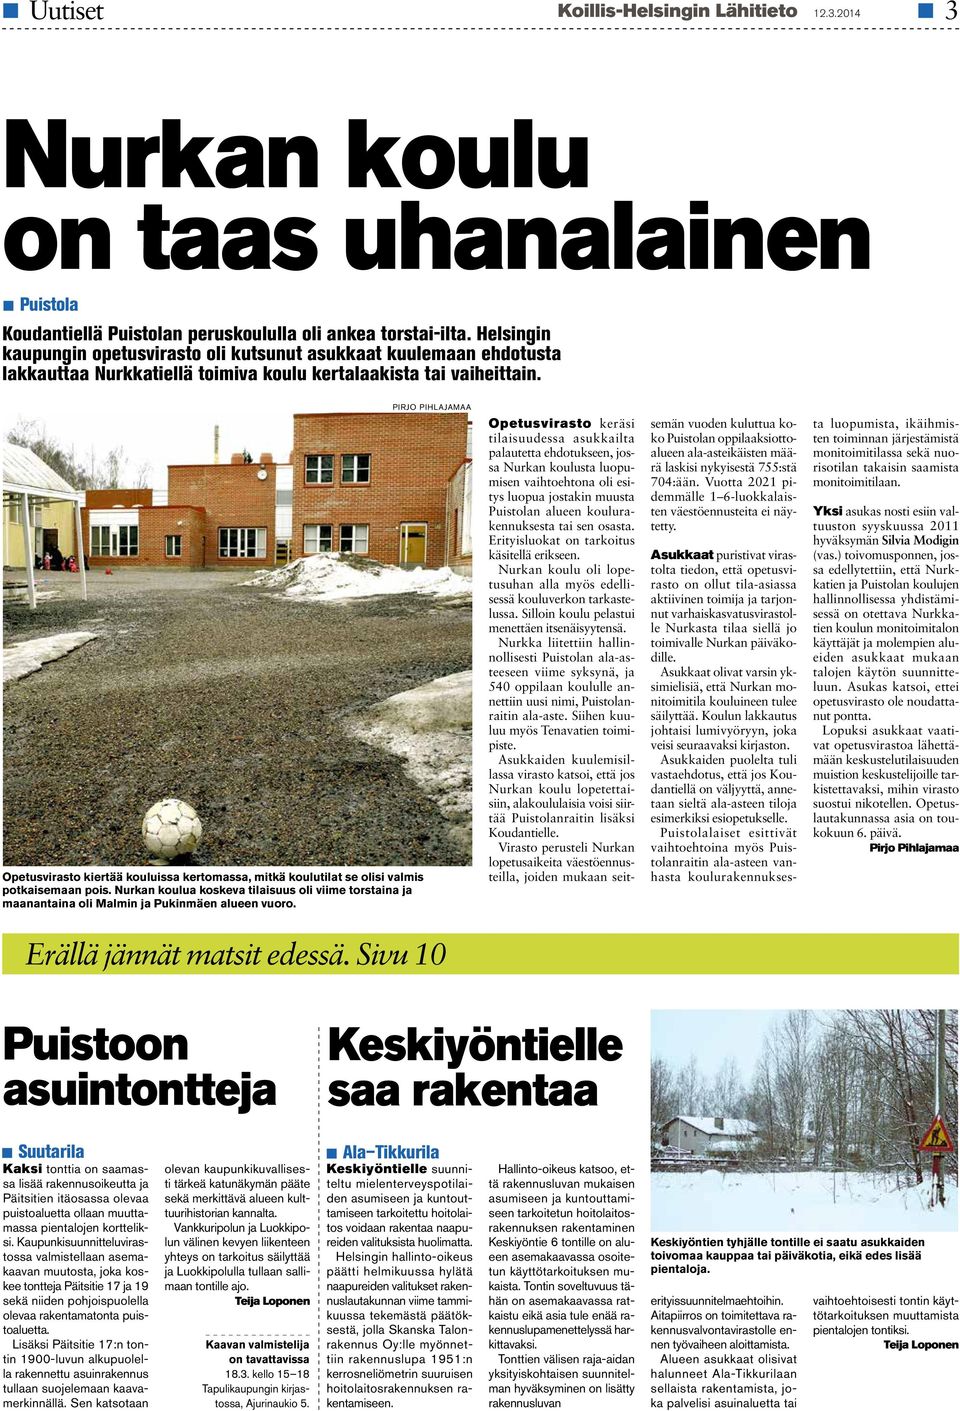 Opetusvirasto kiertää kouluissa kertomassa, mitkä koulutilat se olisi valmis potkaisemaan pois. Nurkan koulua koskeva tilaisuus oli viime torstaina ja maanantaina oli Malmin ja Pukinmäen alueen vuoro.